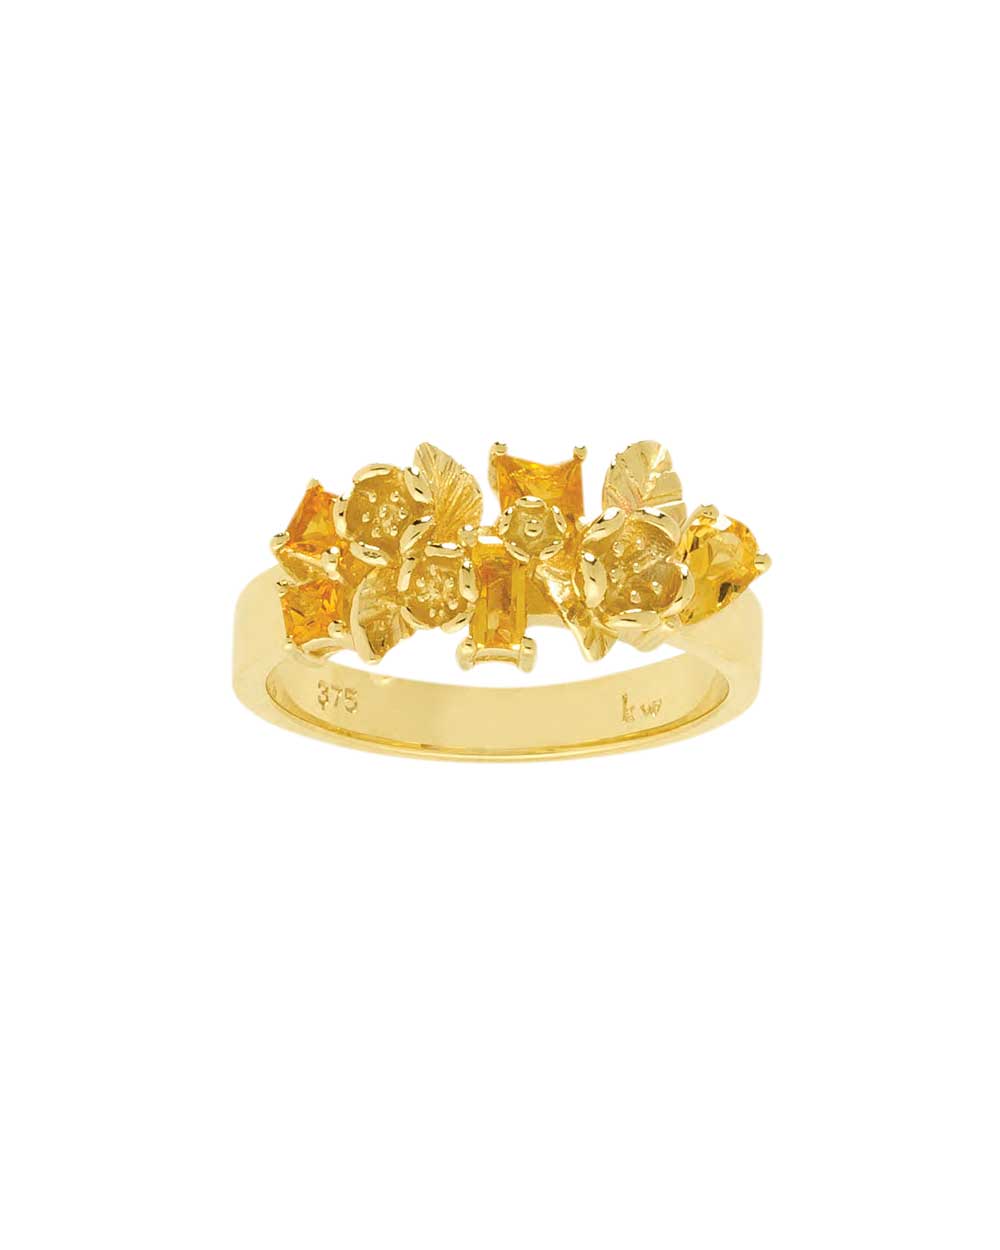 Karen Walker Jewellery ring, $1089